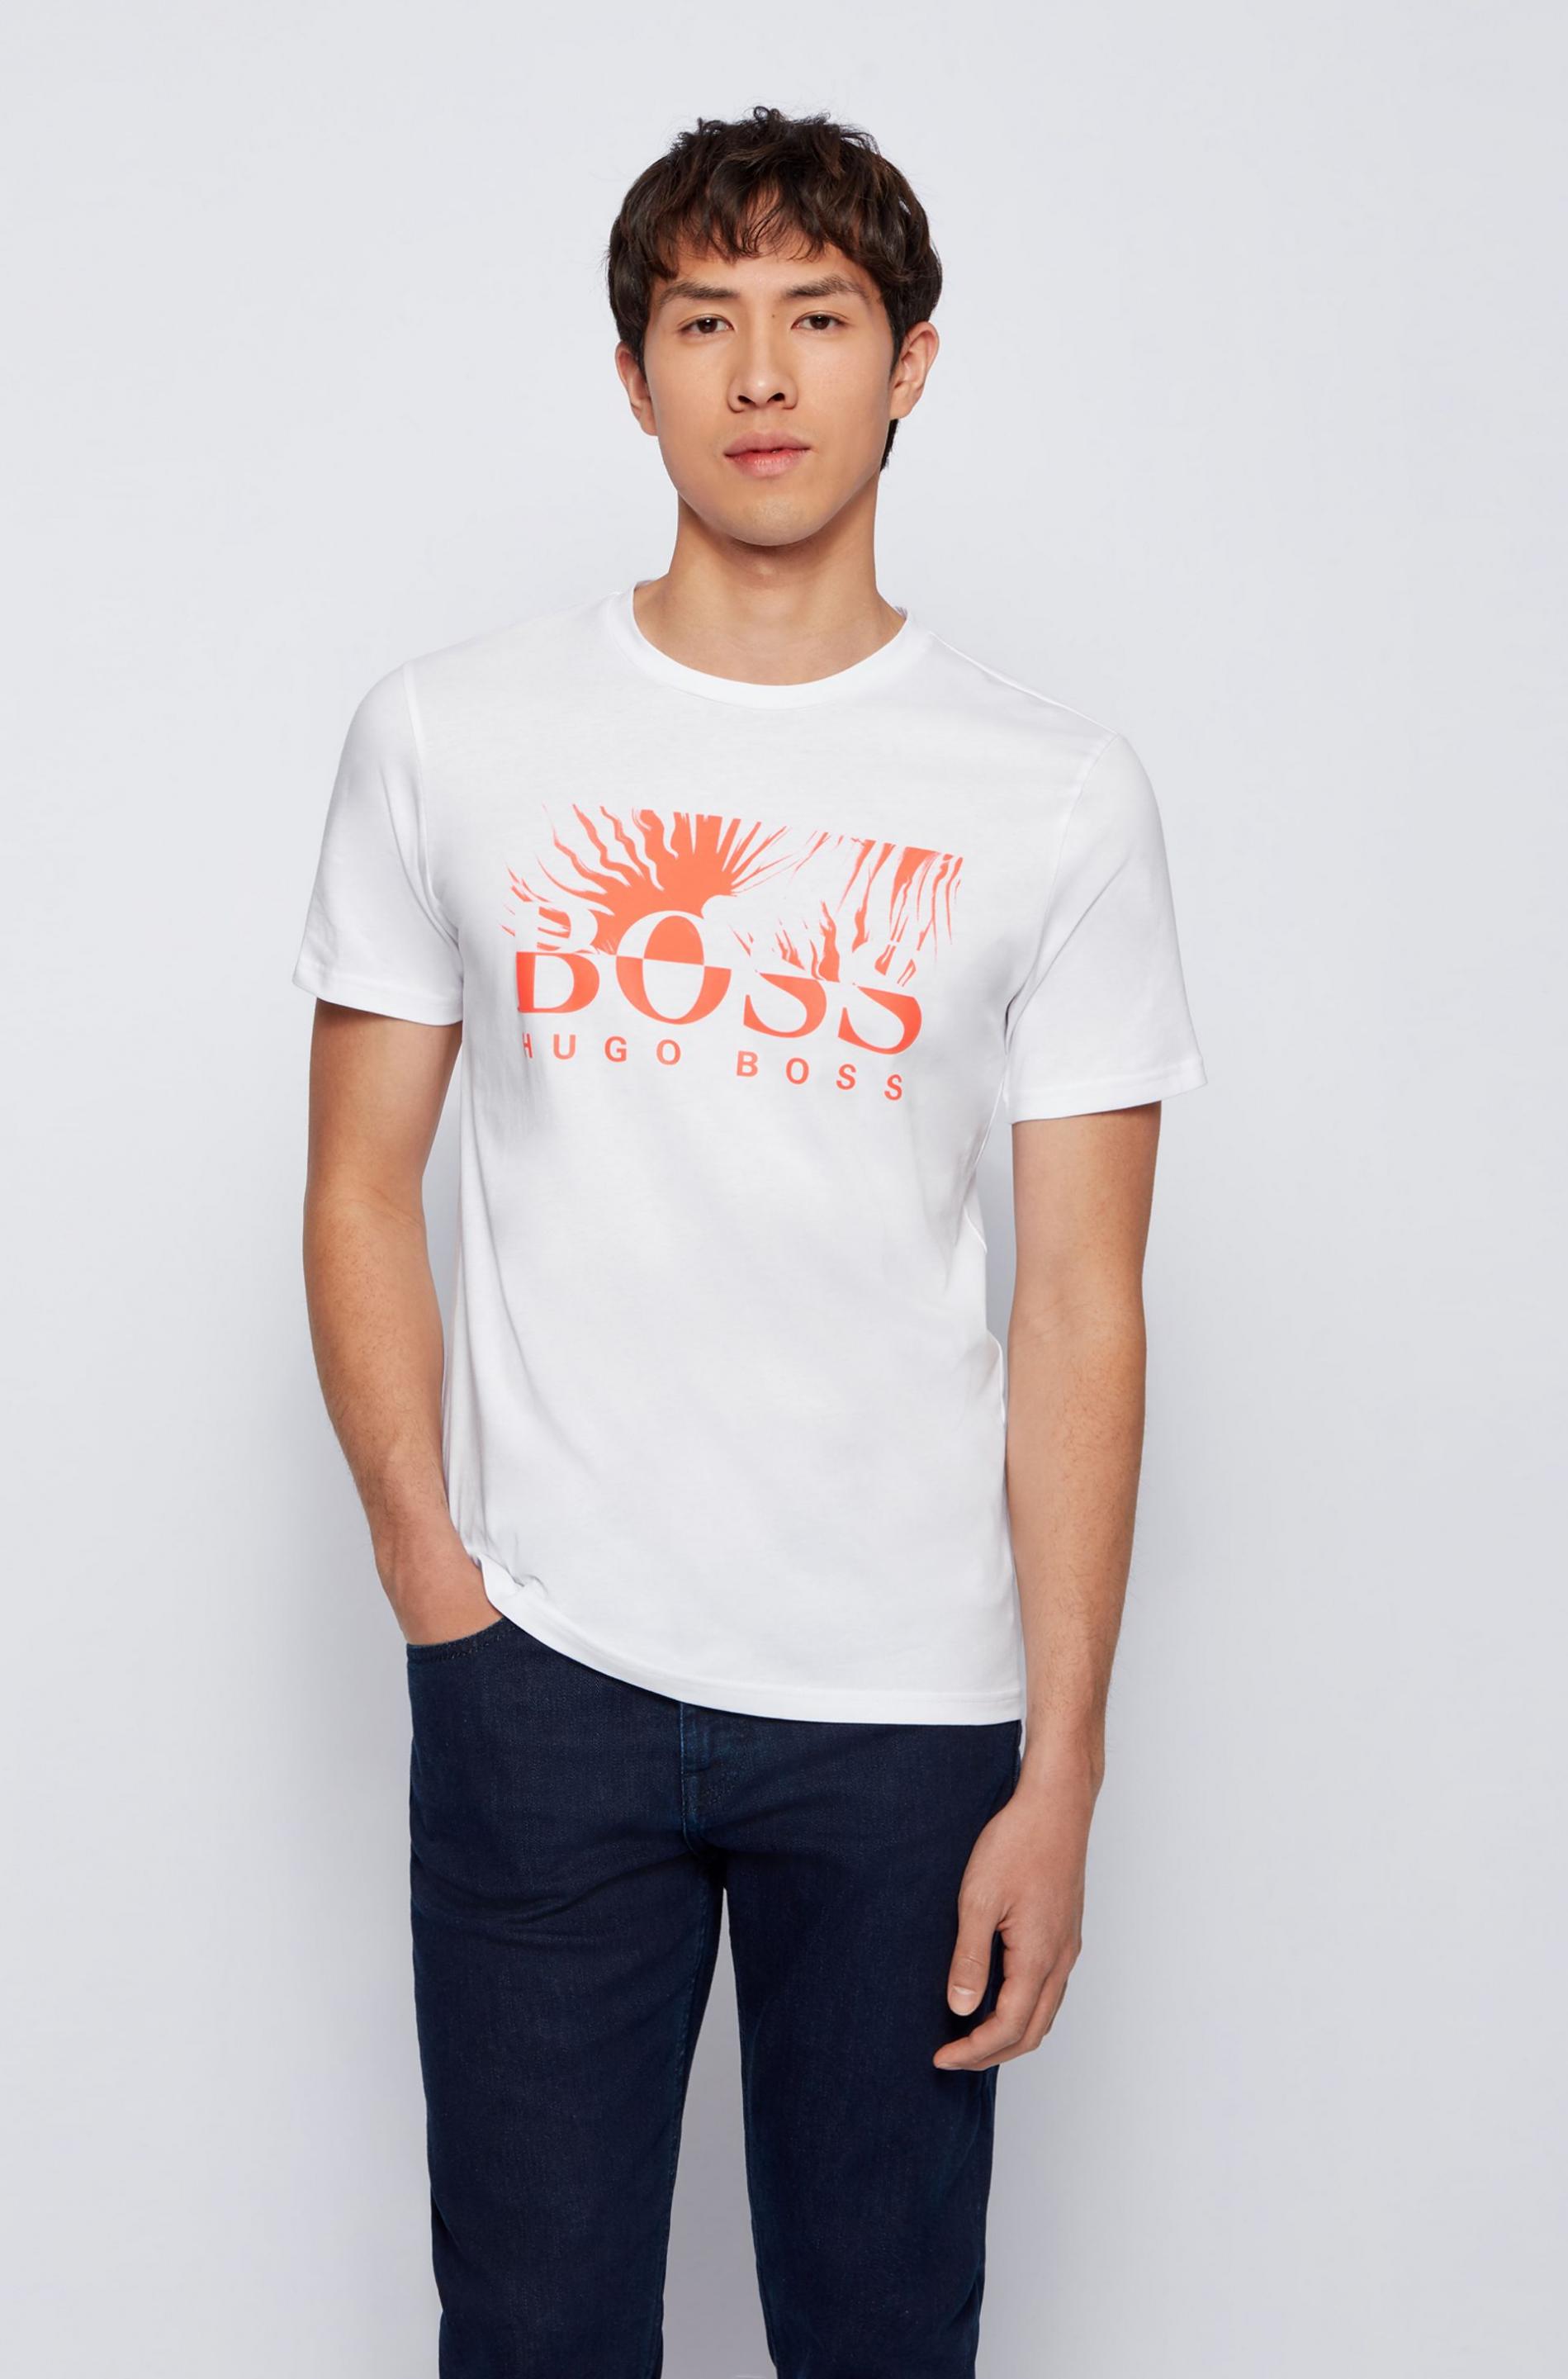 BOSS Hommes TLogo 21 T-Shirt en Coton avec Logo imprimé Selon différentes Techniques